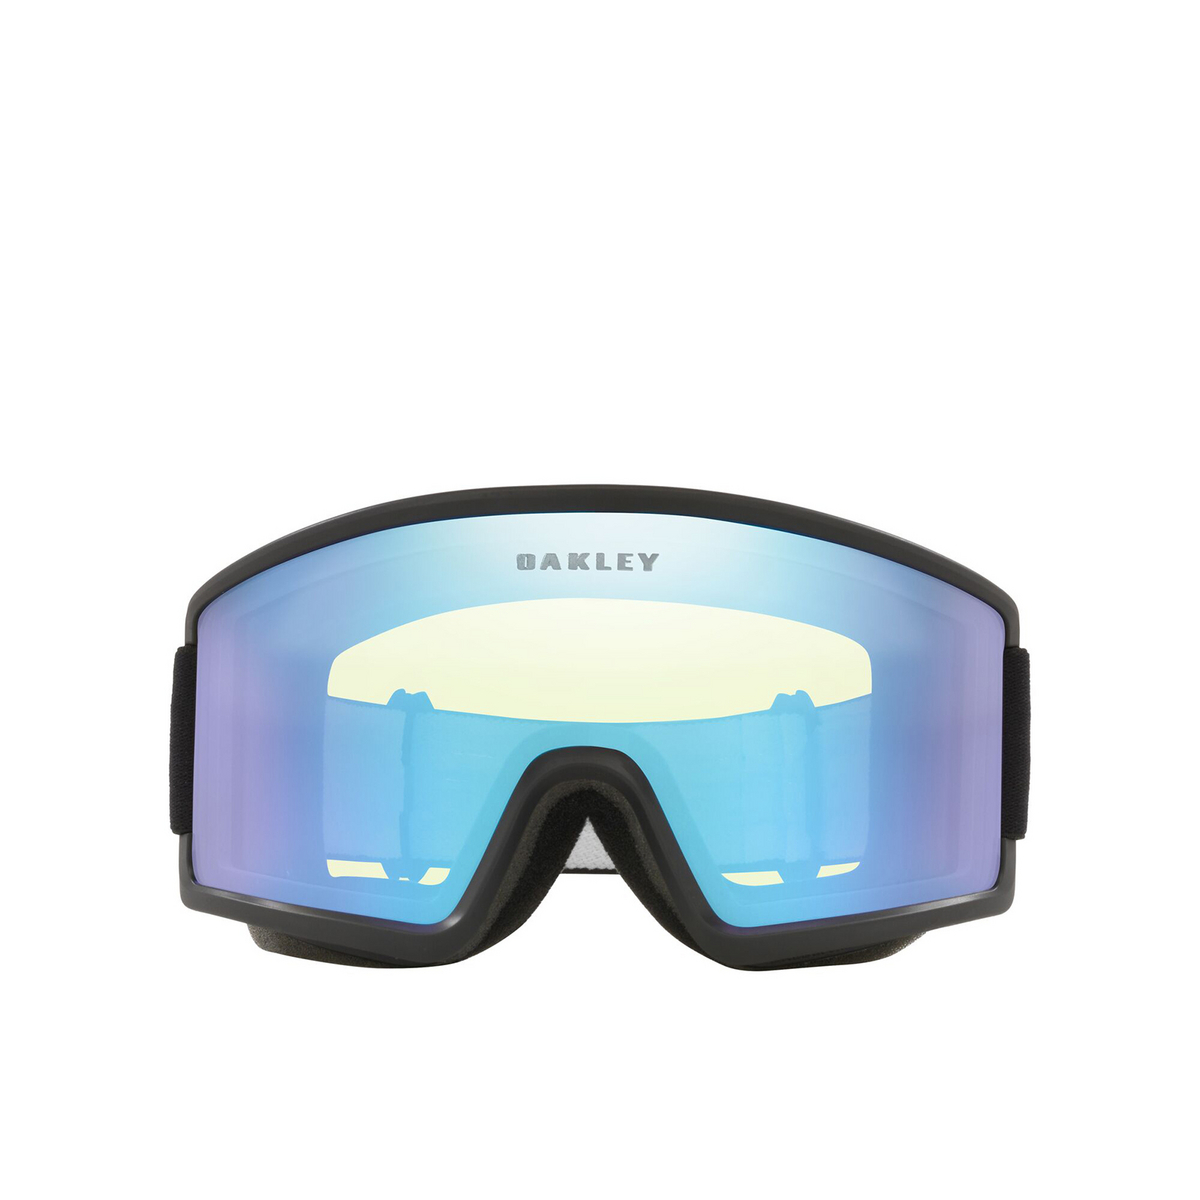 Oakley TARGET LINE L Sunglasses 712004 Matte Black - front view